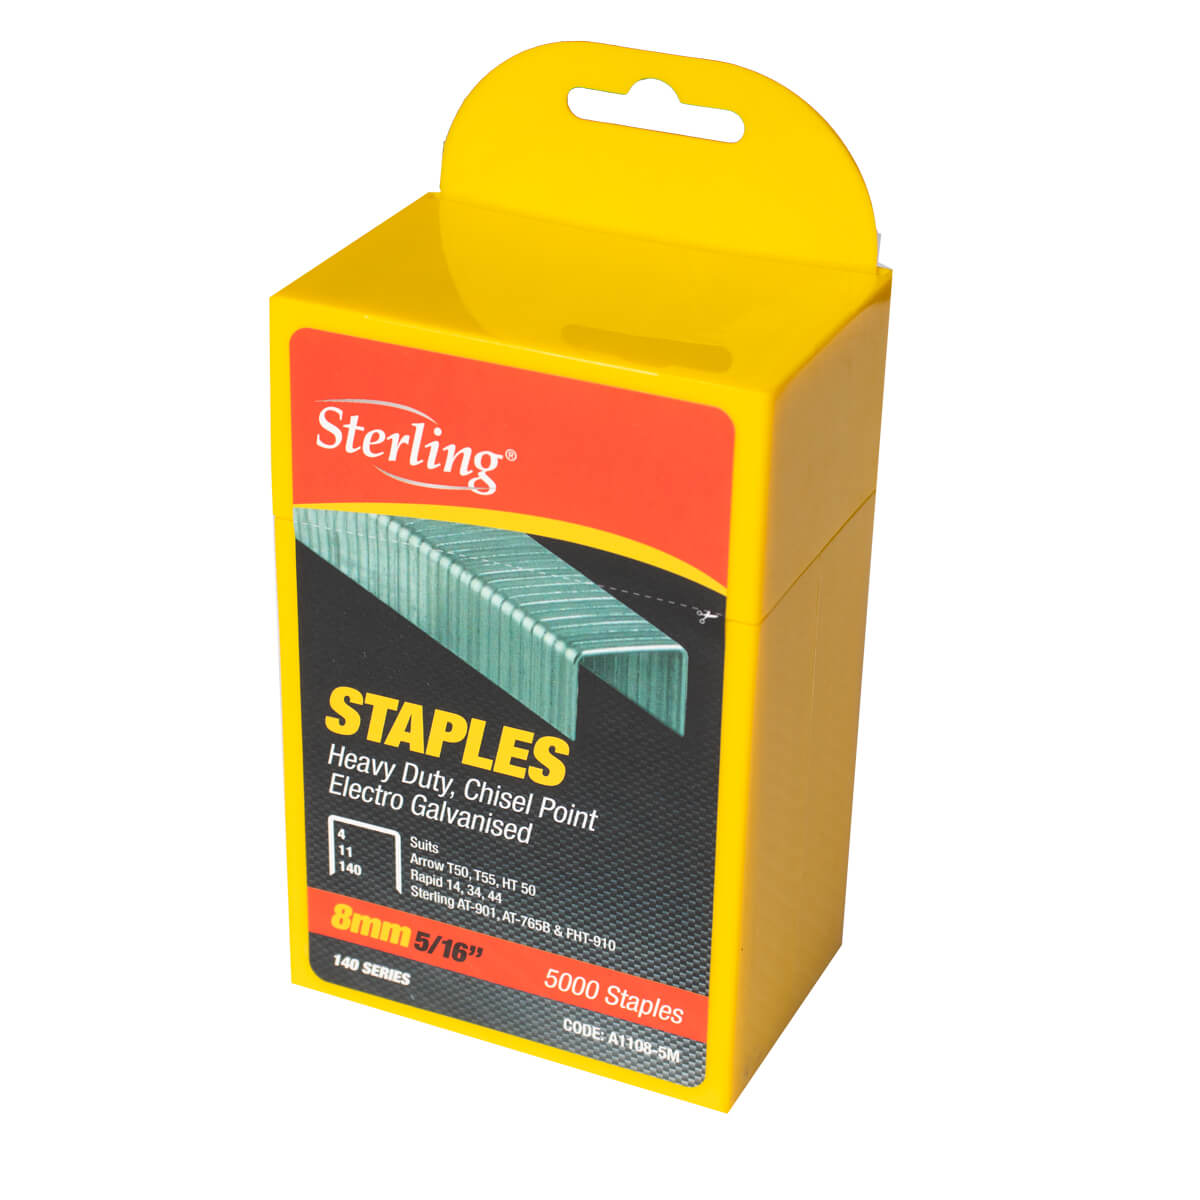 Staples 8mm Sterling 5000